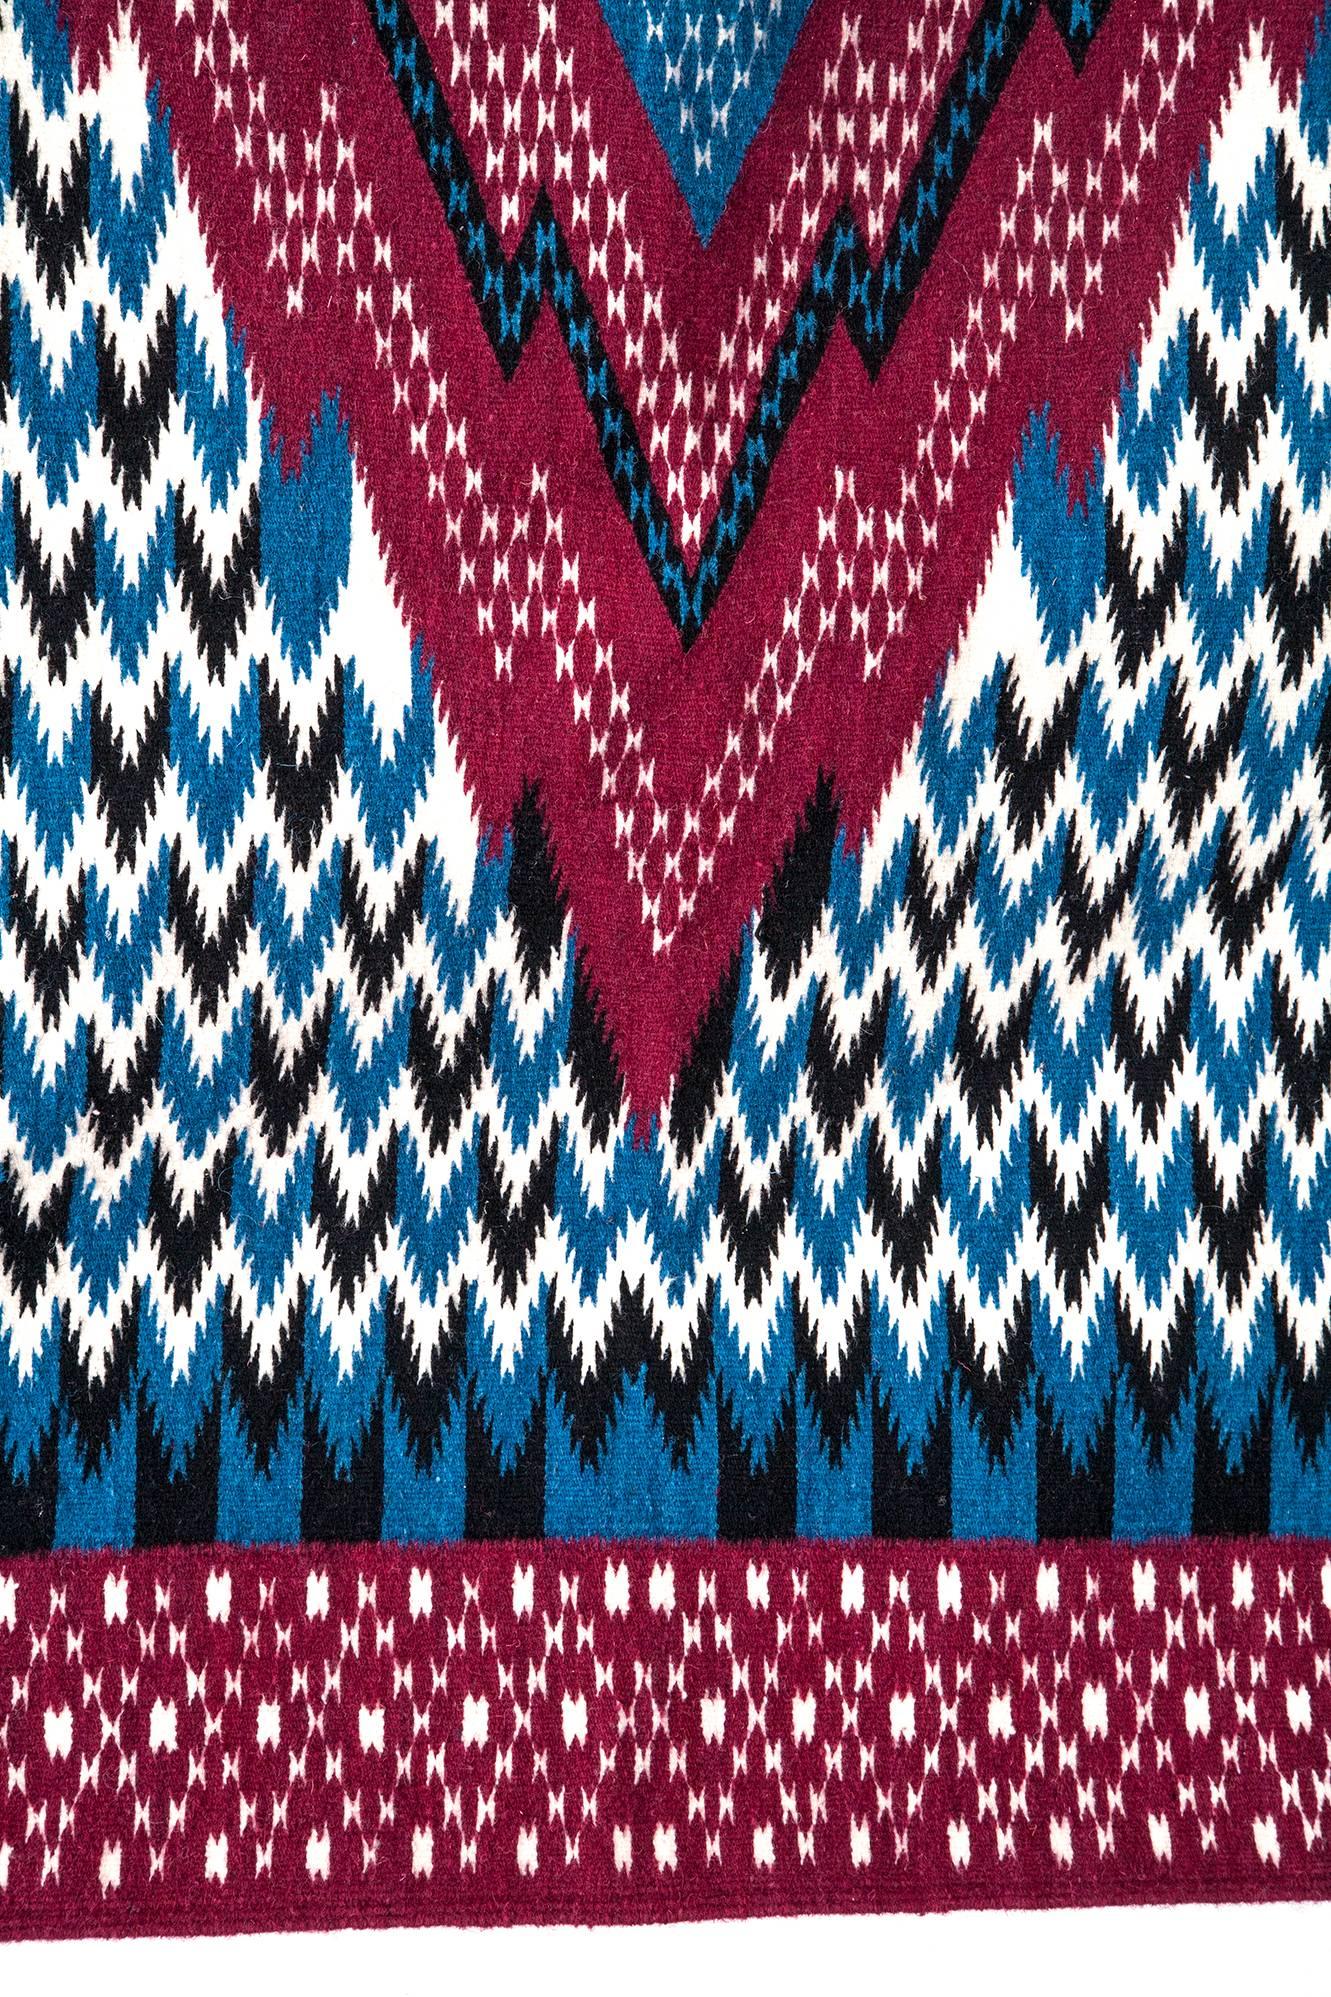 Sarape de Saltillo Azul / Textiles Mexican Folk Art Serape 2